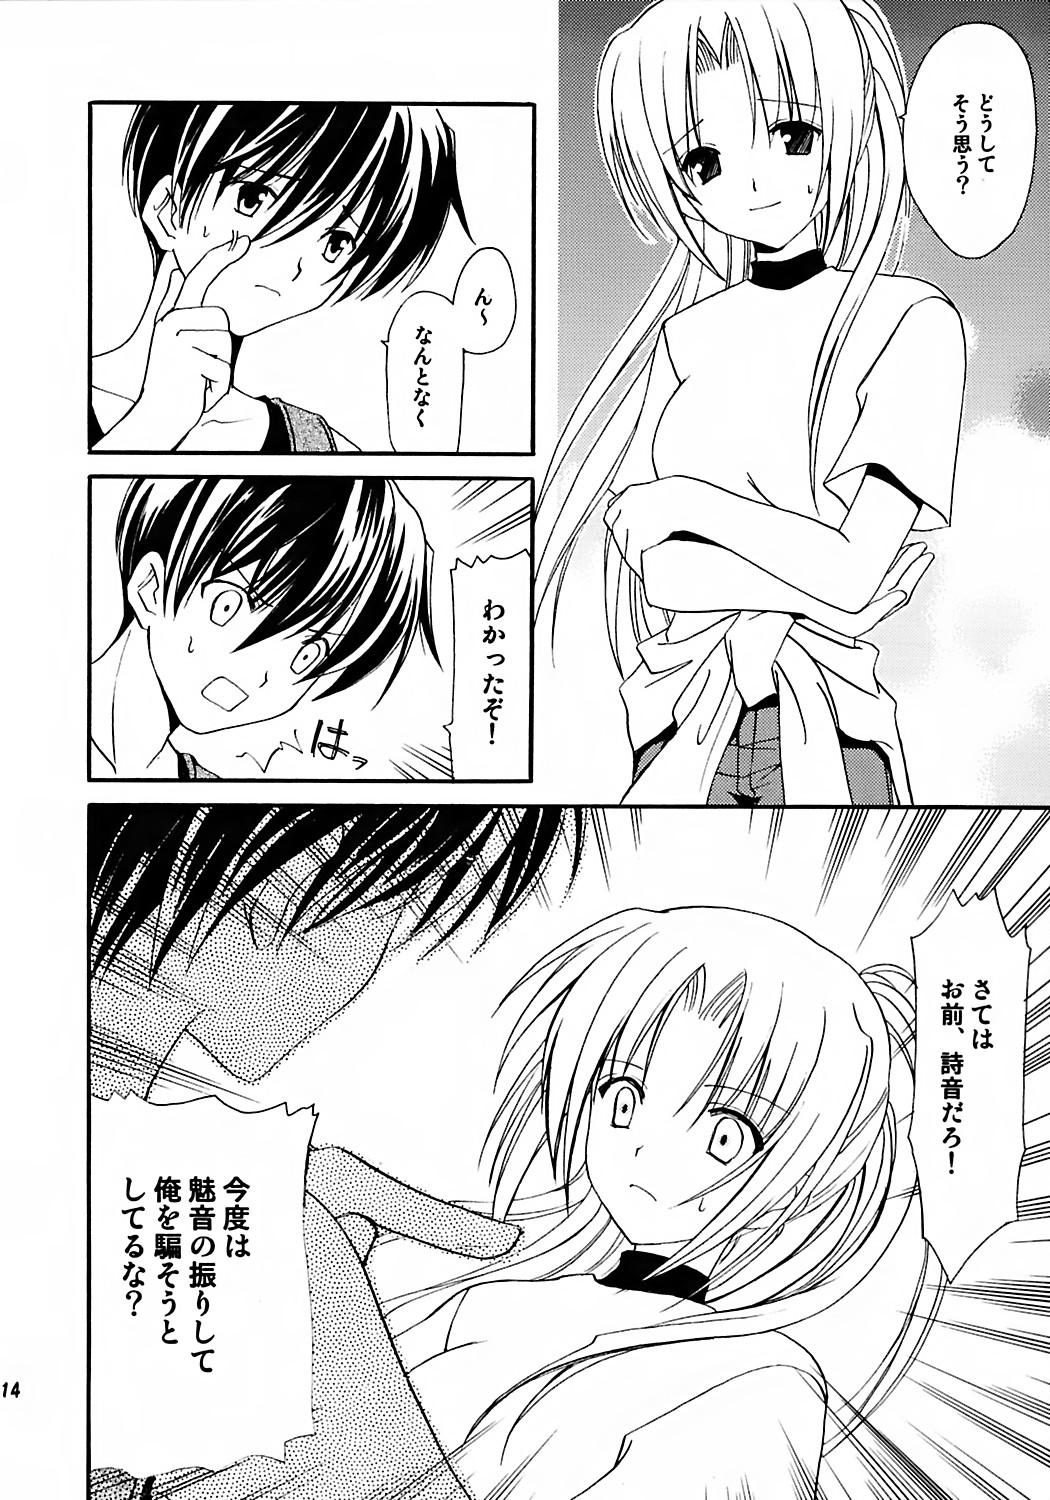 Pussyfucking Watashi no koe ga kikoemasu ka - Higurashi no naku koro ni Sex - Page 12